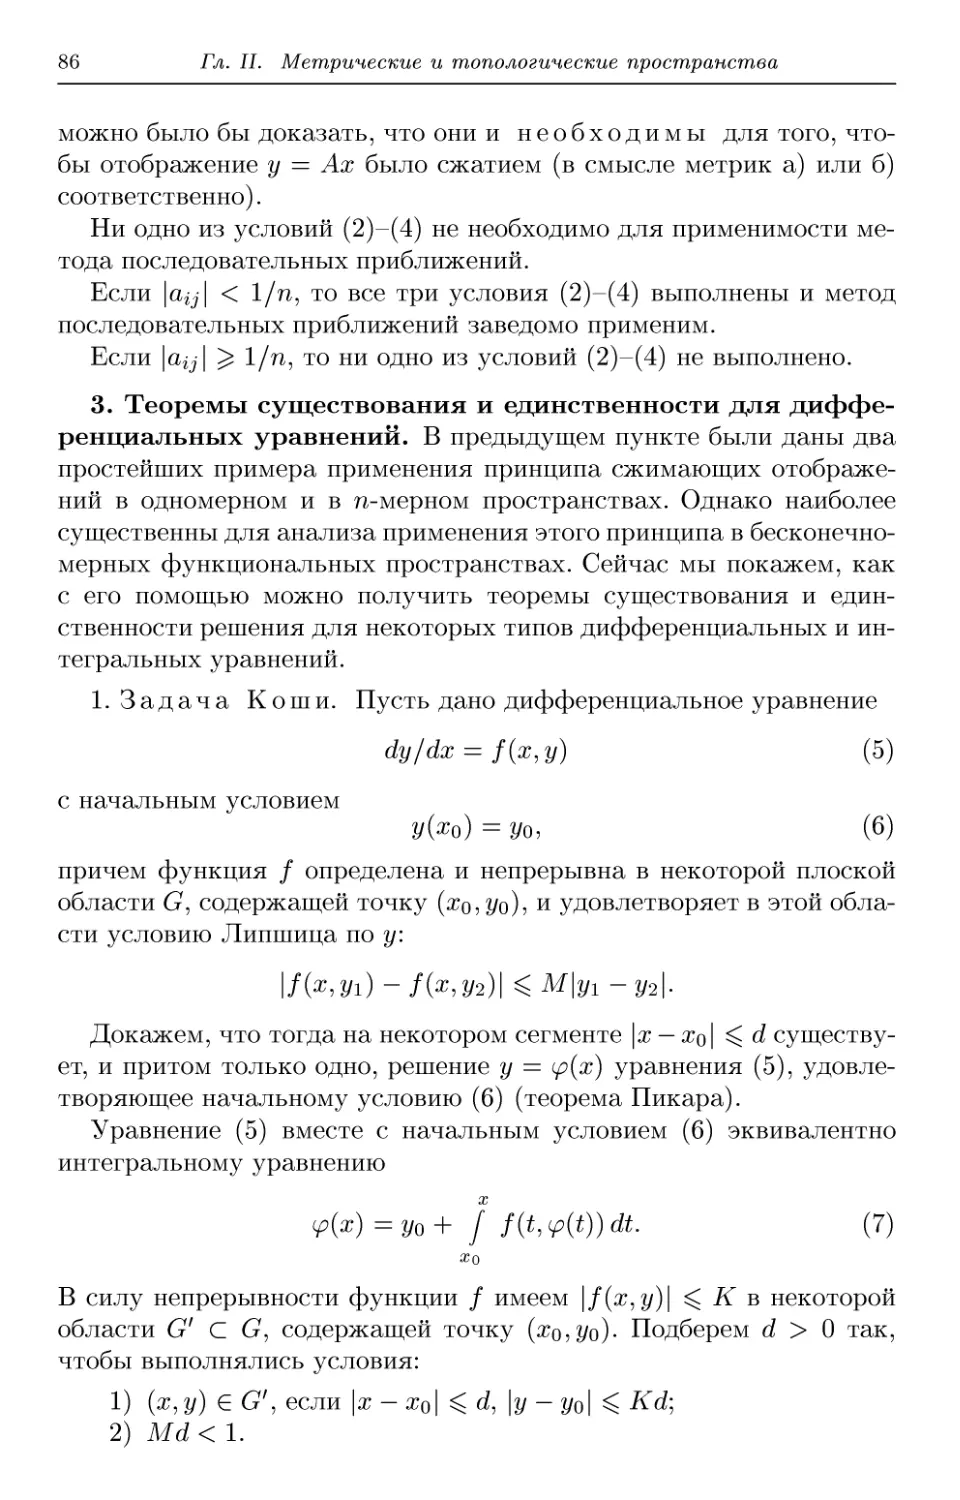 3. Теоремы существования и единственности для дифференциальных уравнений